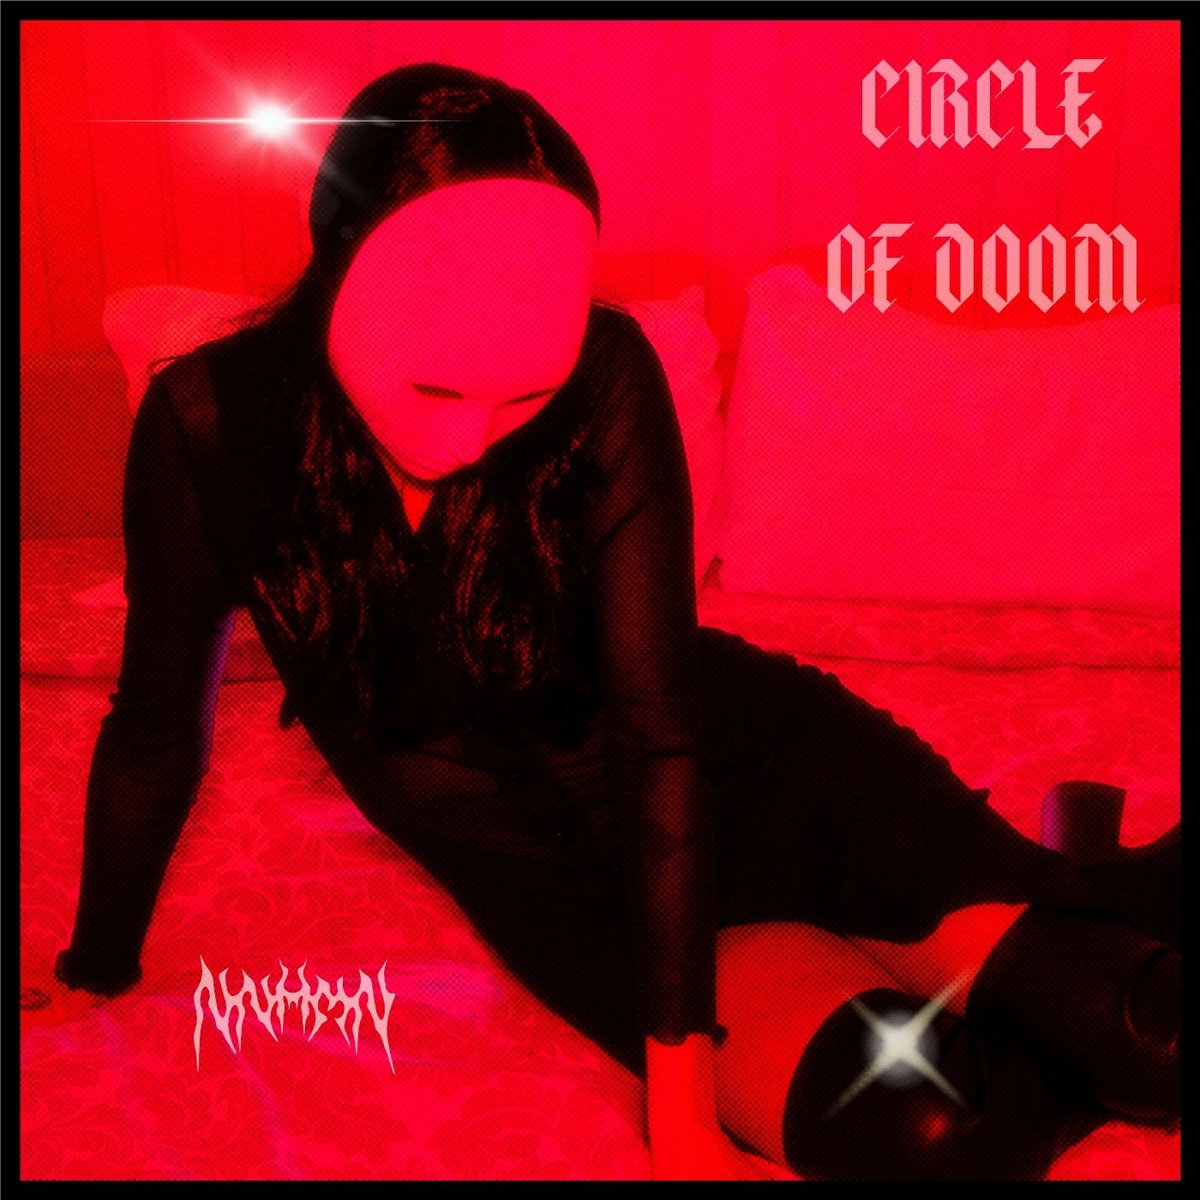 NNHMN, “Circle of Doom”